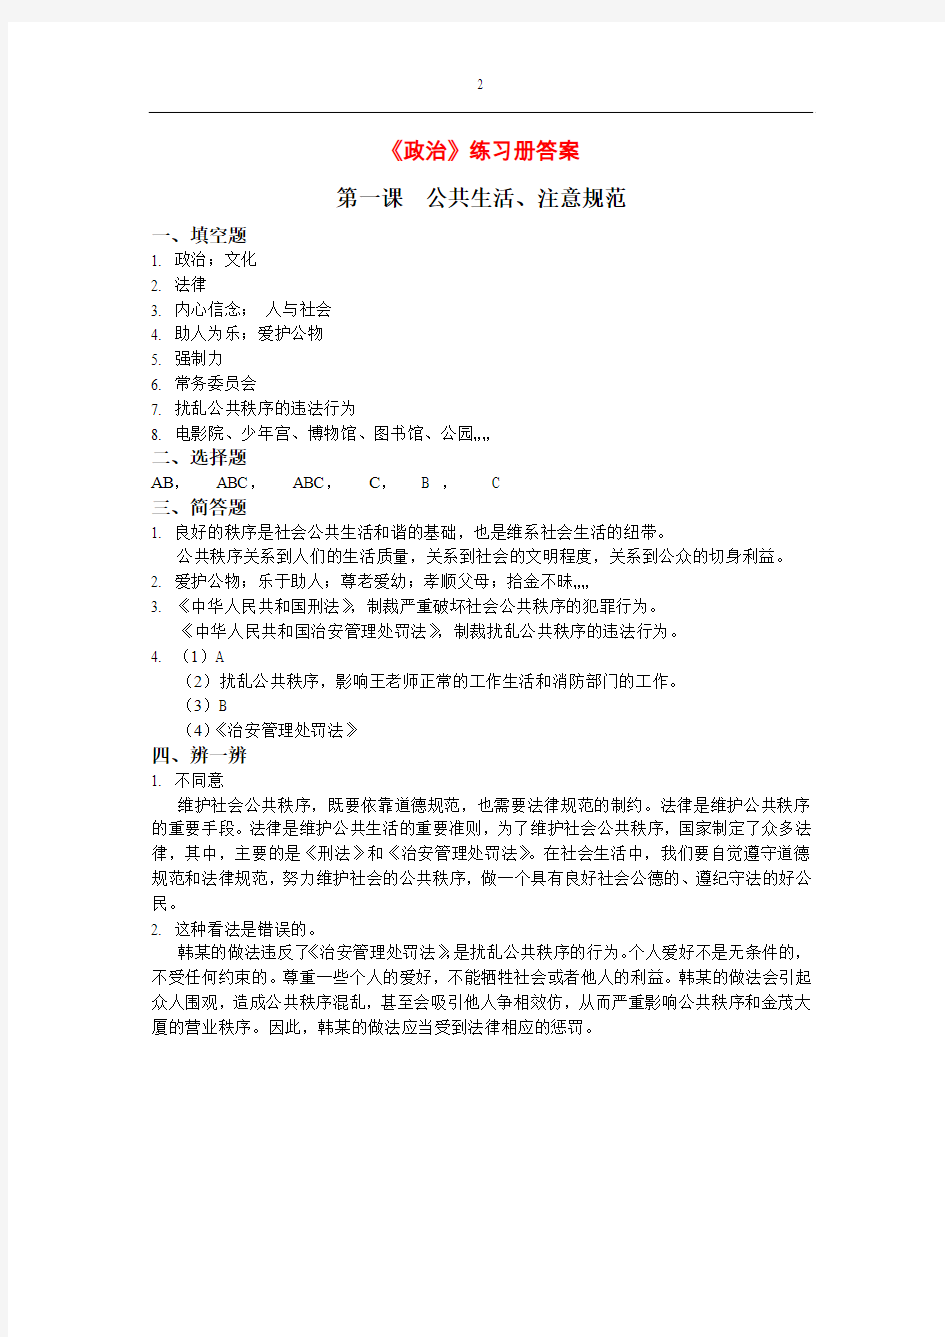 上海八年级第一学期全套练习册答案(包括政治历史生命数学)